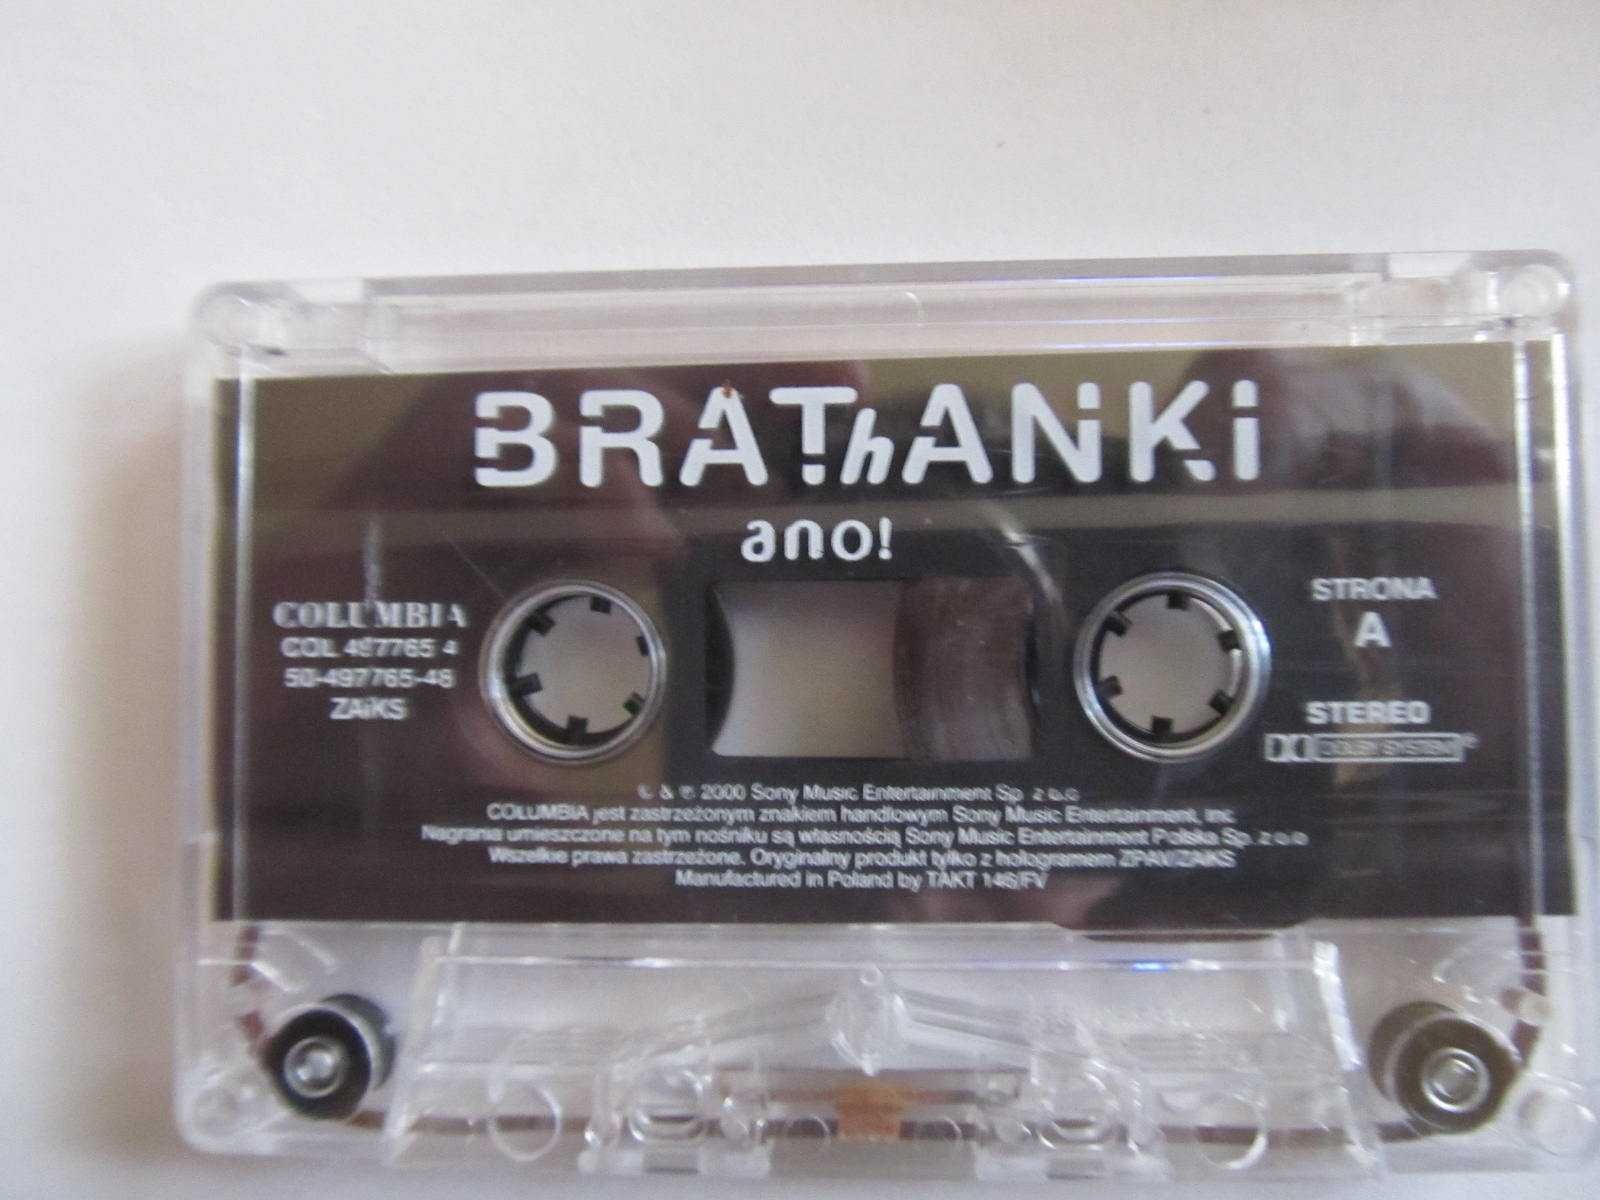 Brathanki "Ano!"- kaseta audio